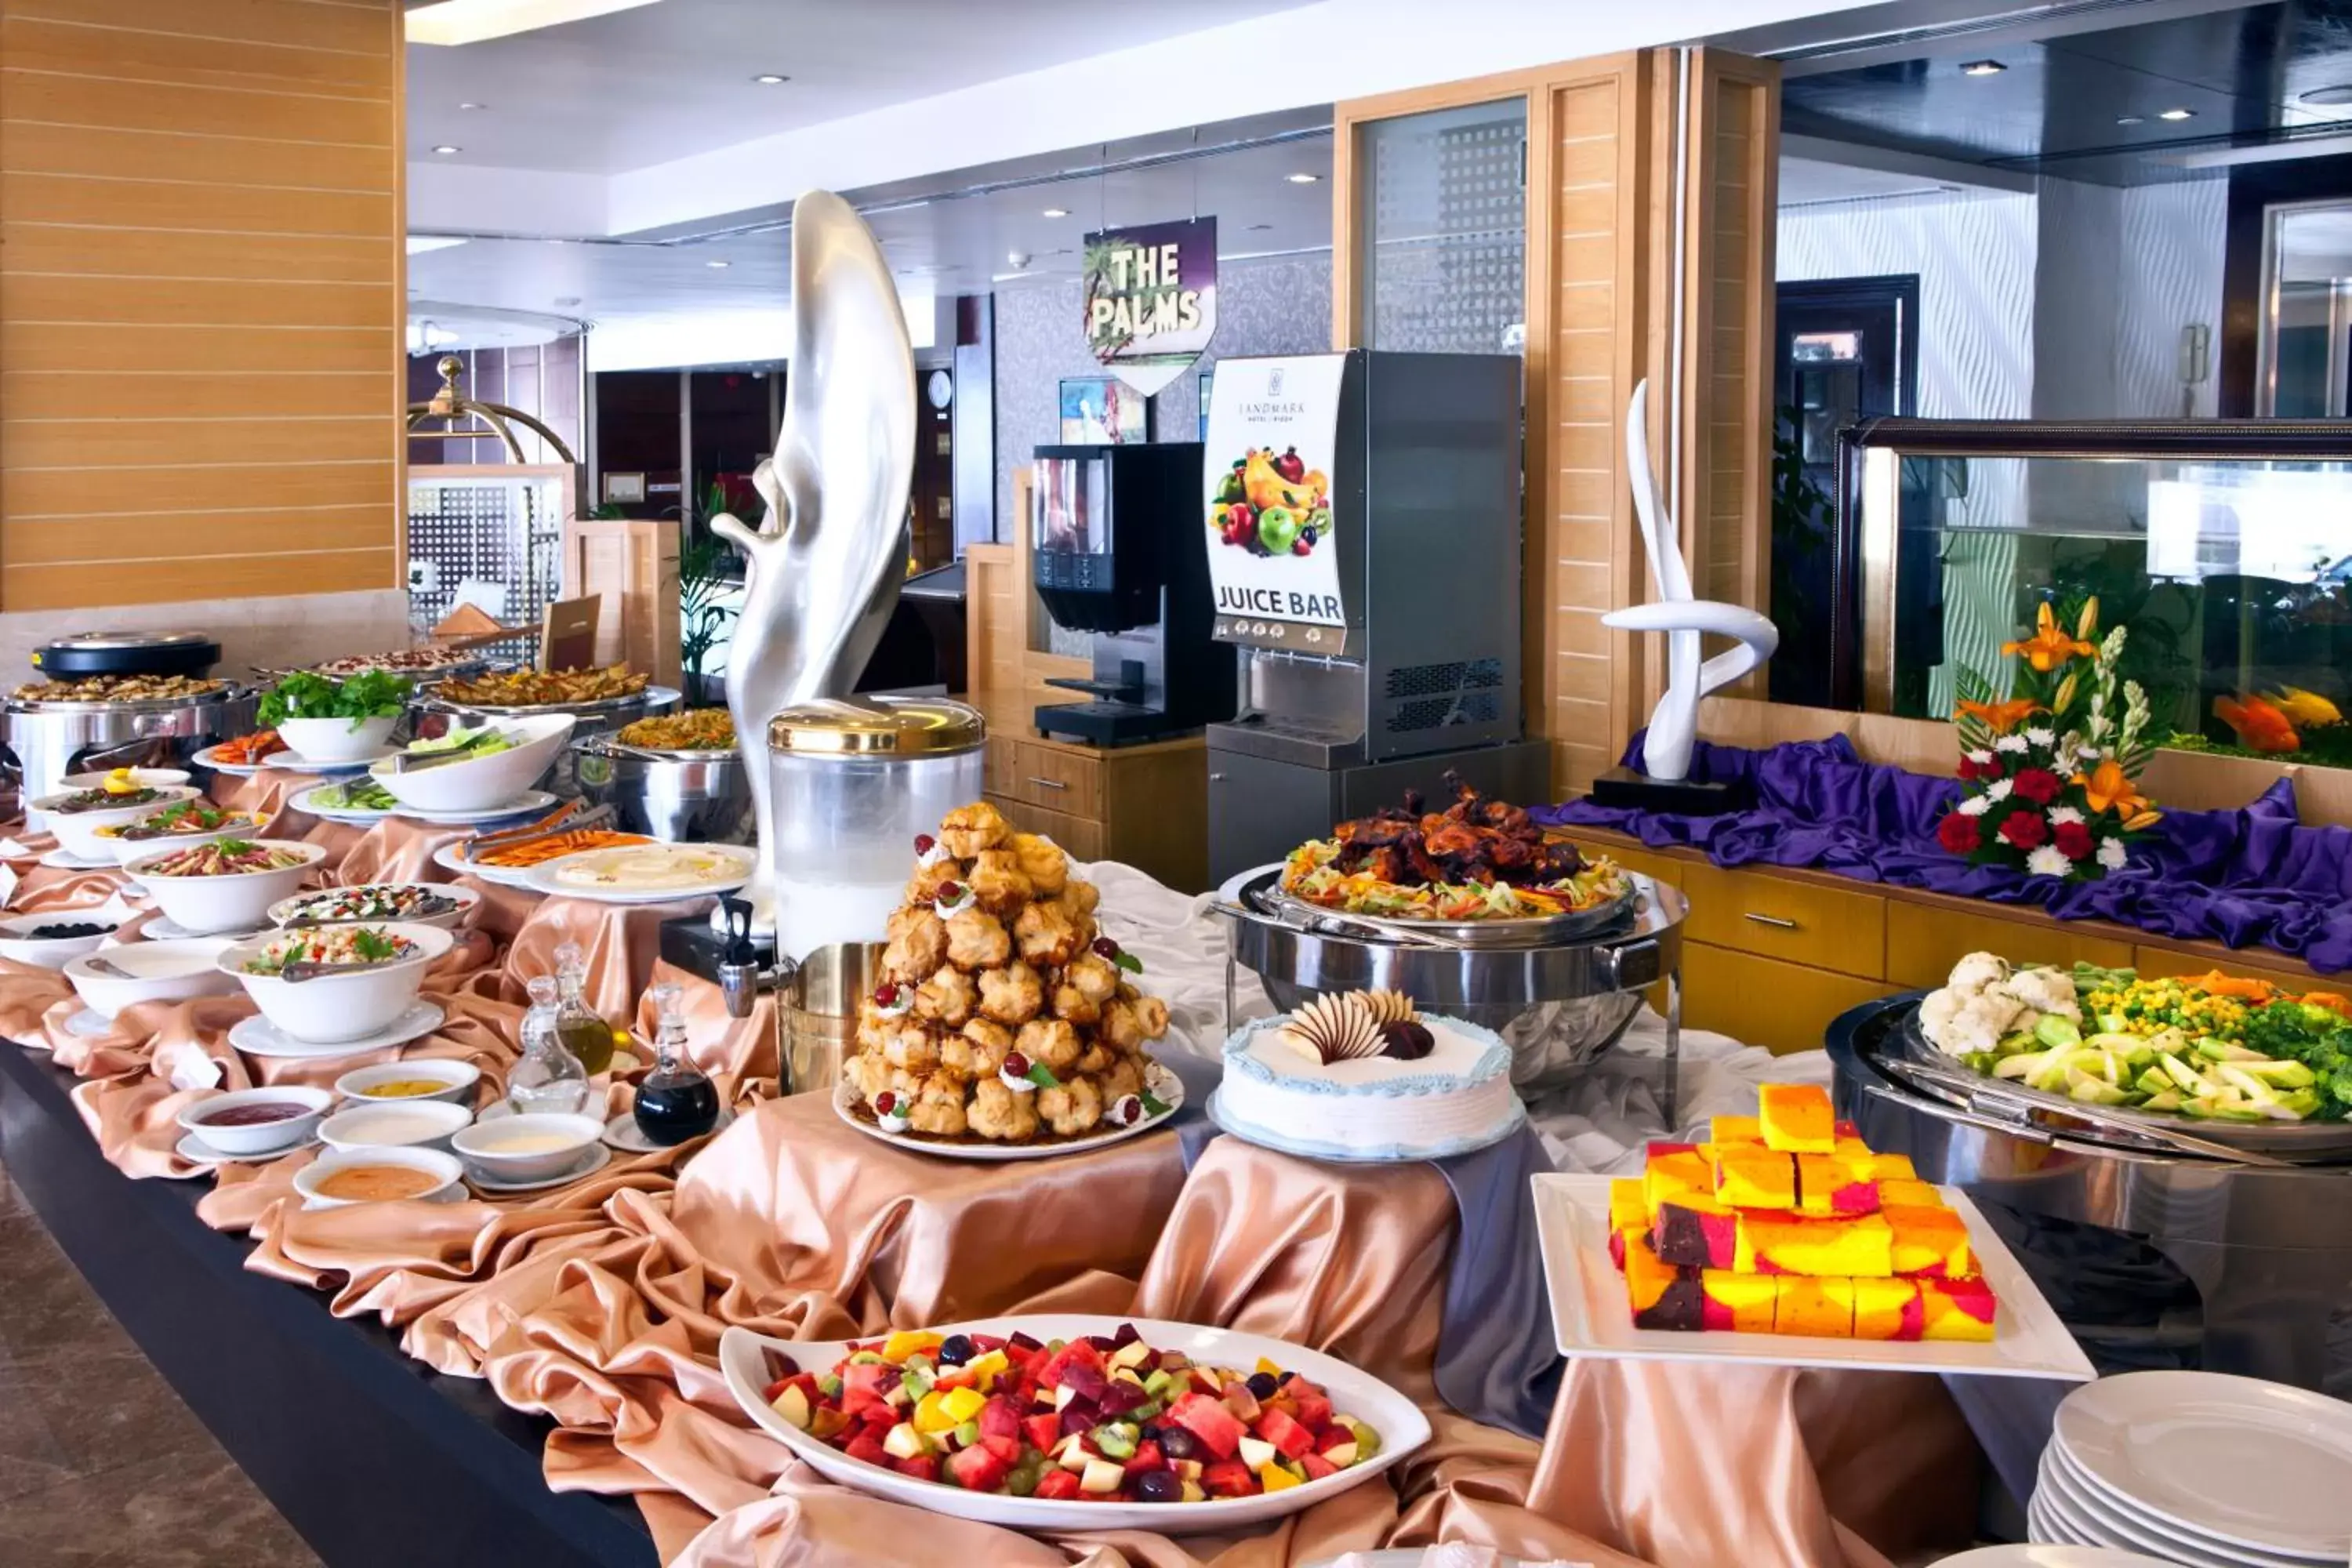 Continental breakfast in Landmark Riqqa Hotel